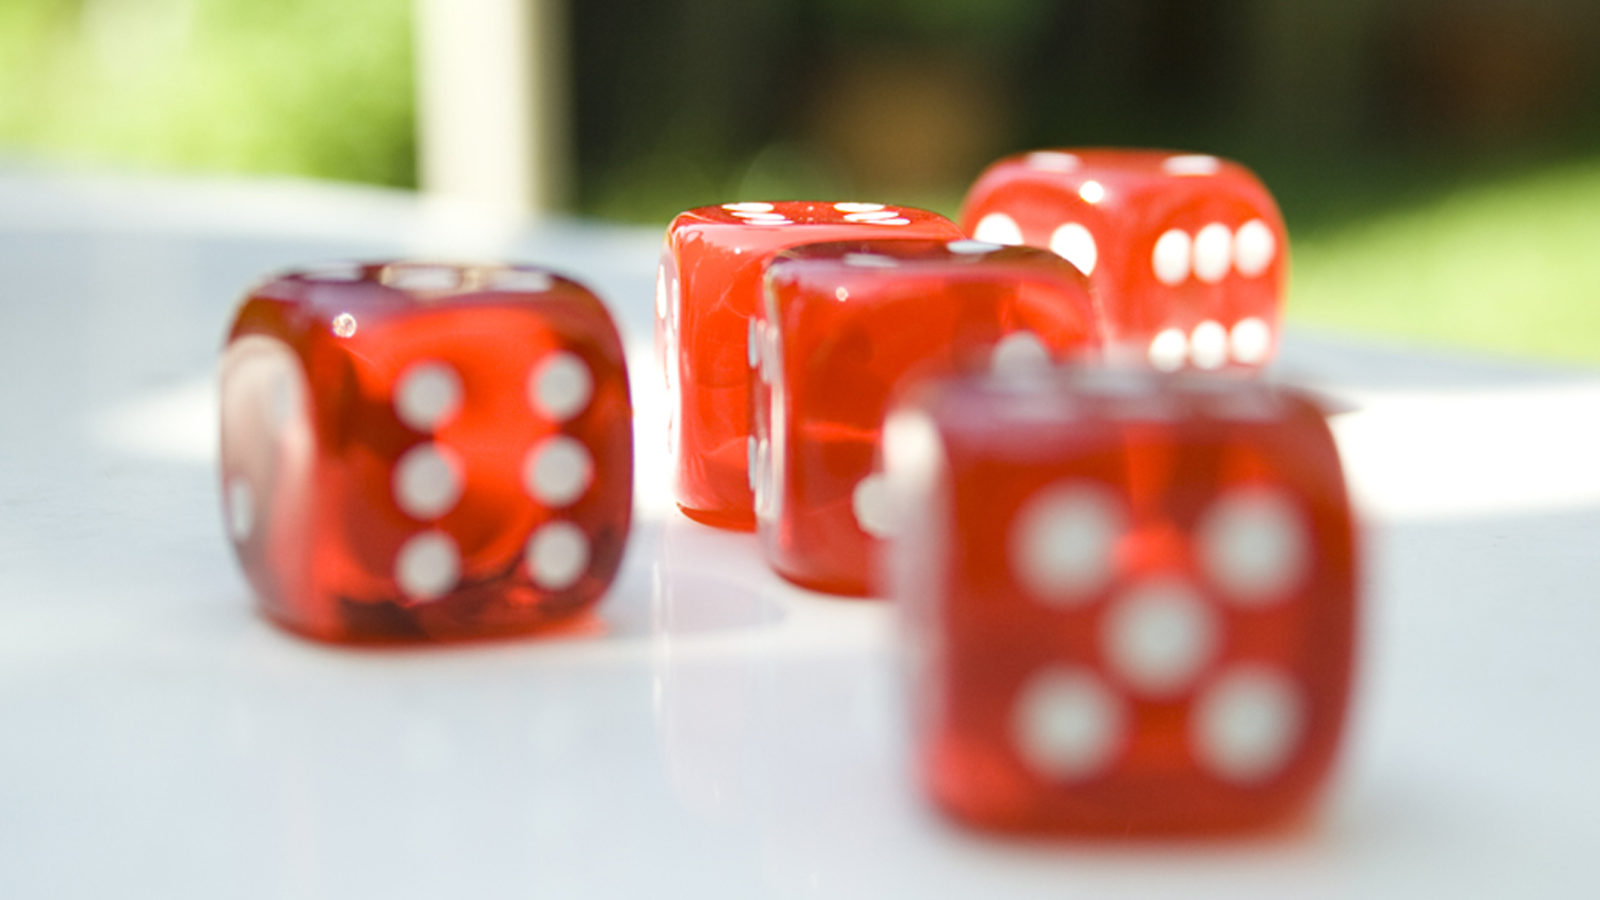 Photo of dice